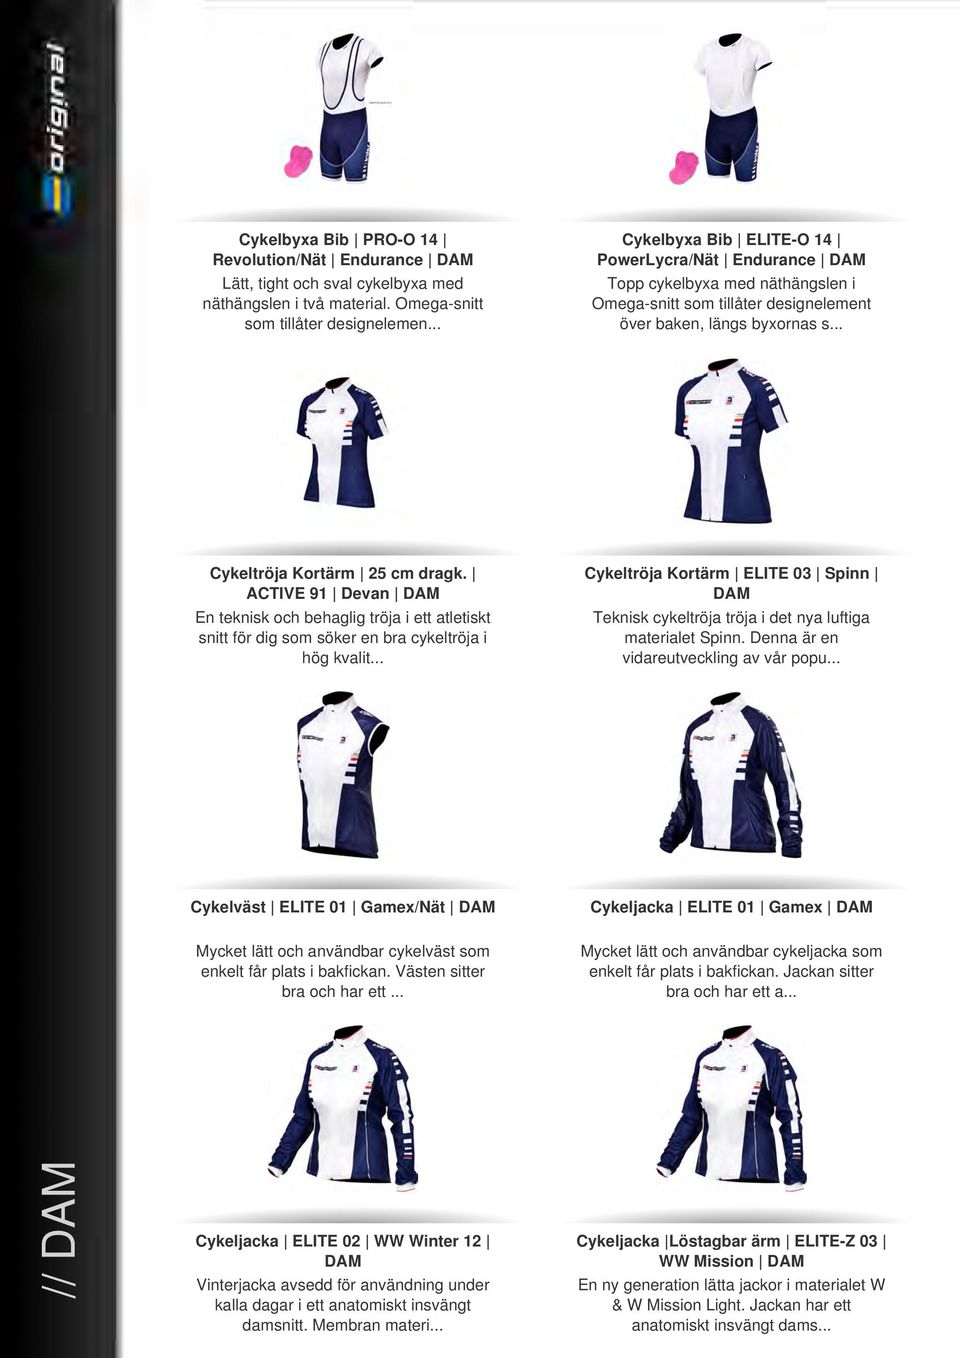 ACTIVE 91 Devan DAM En teknisk och behaglig tröja i ett atletiskt snitt för dig som söker en bra cykeltröja i hög kvalit.